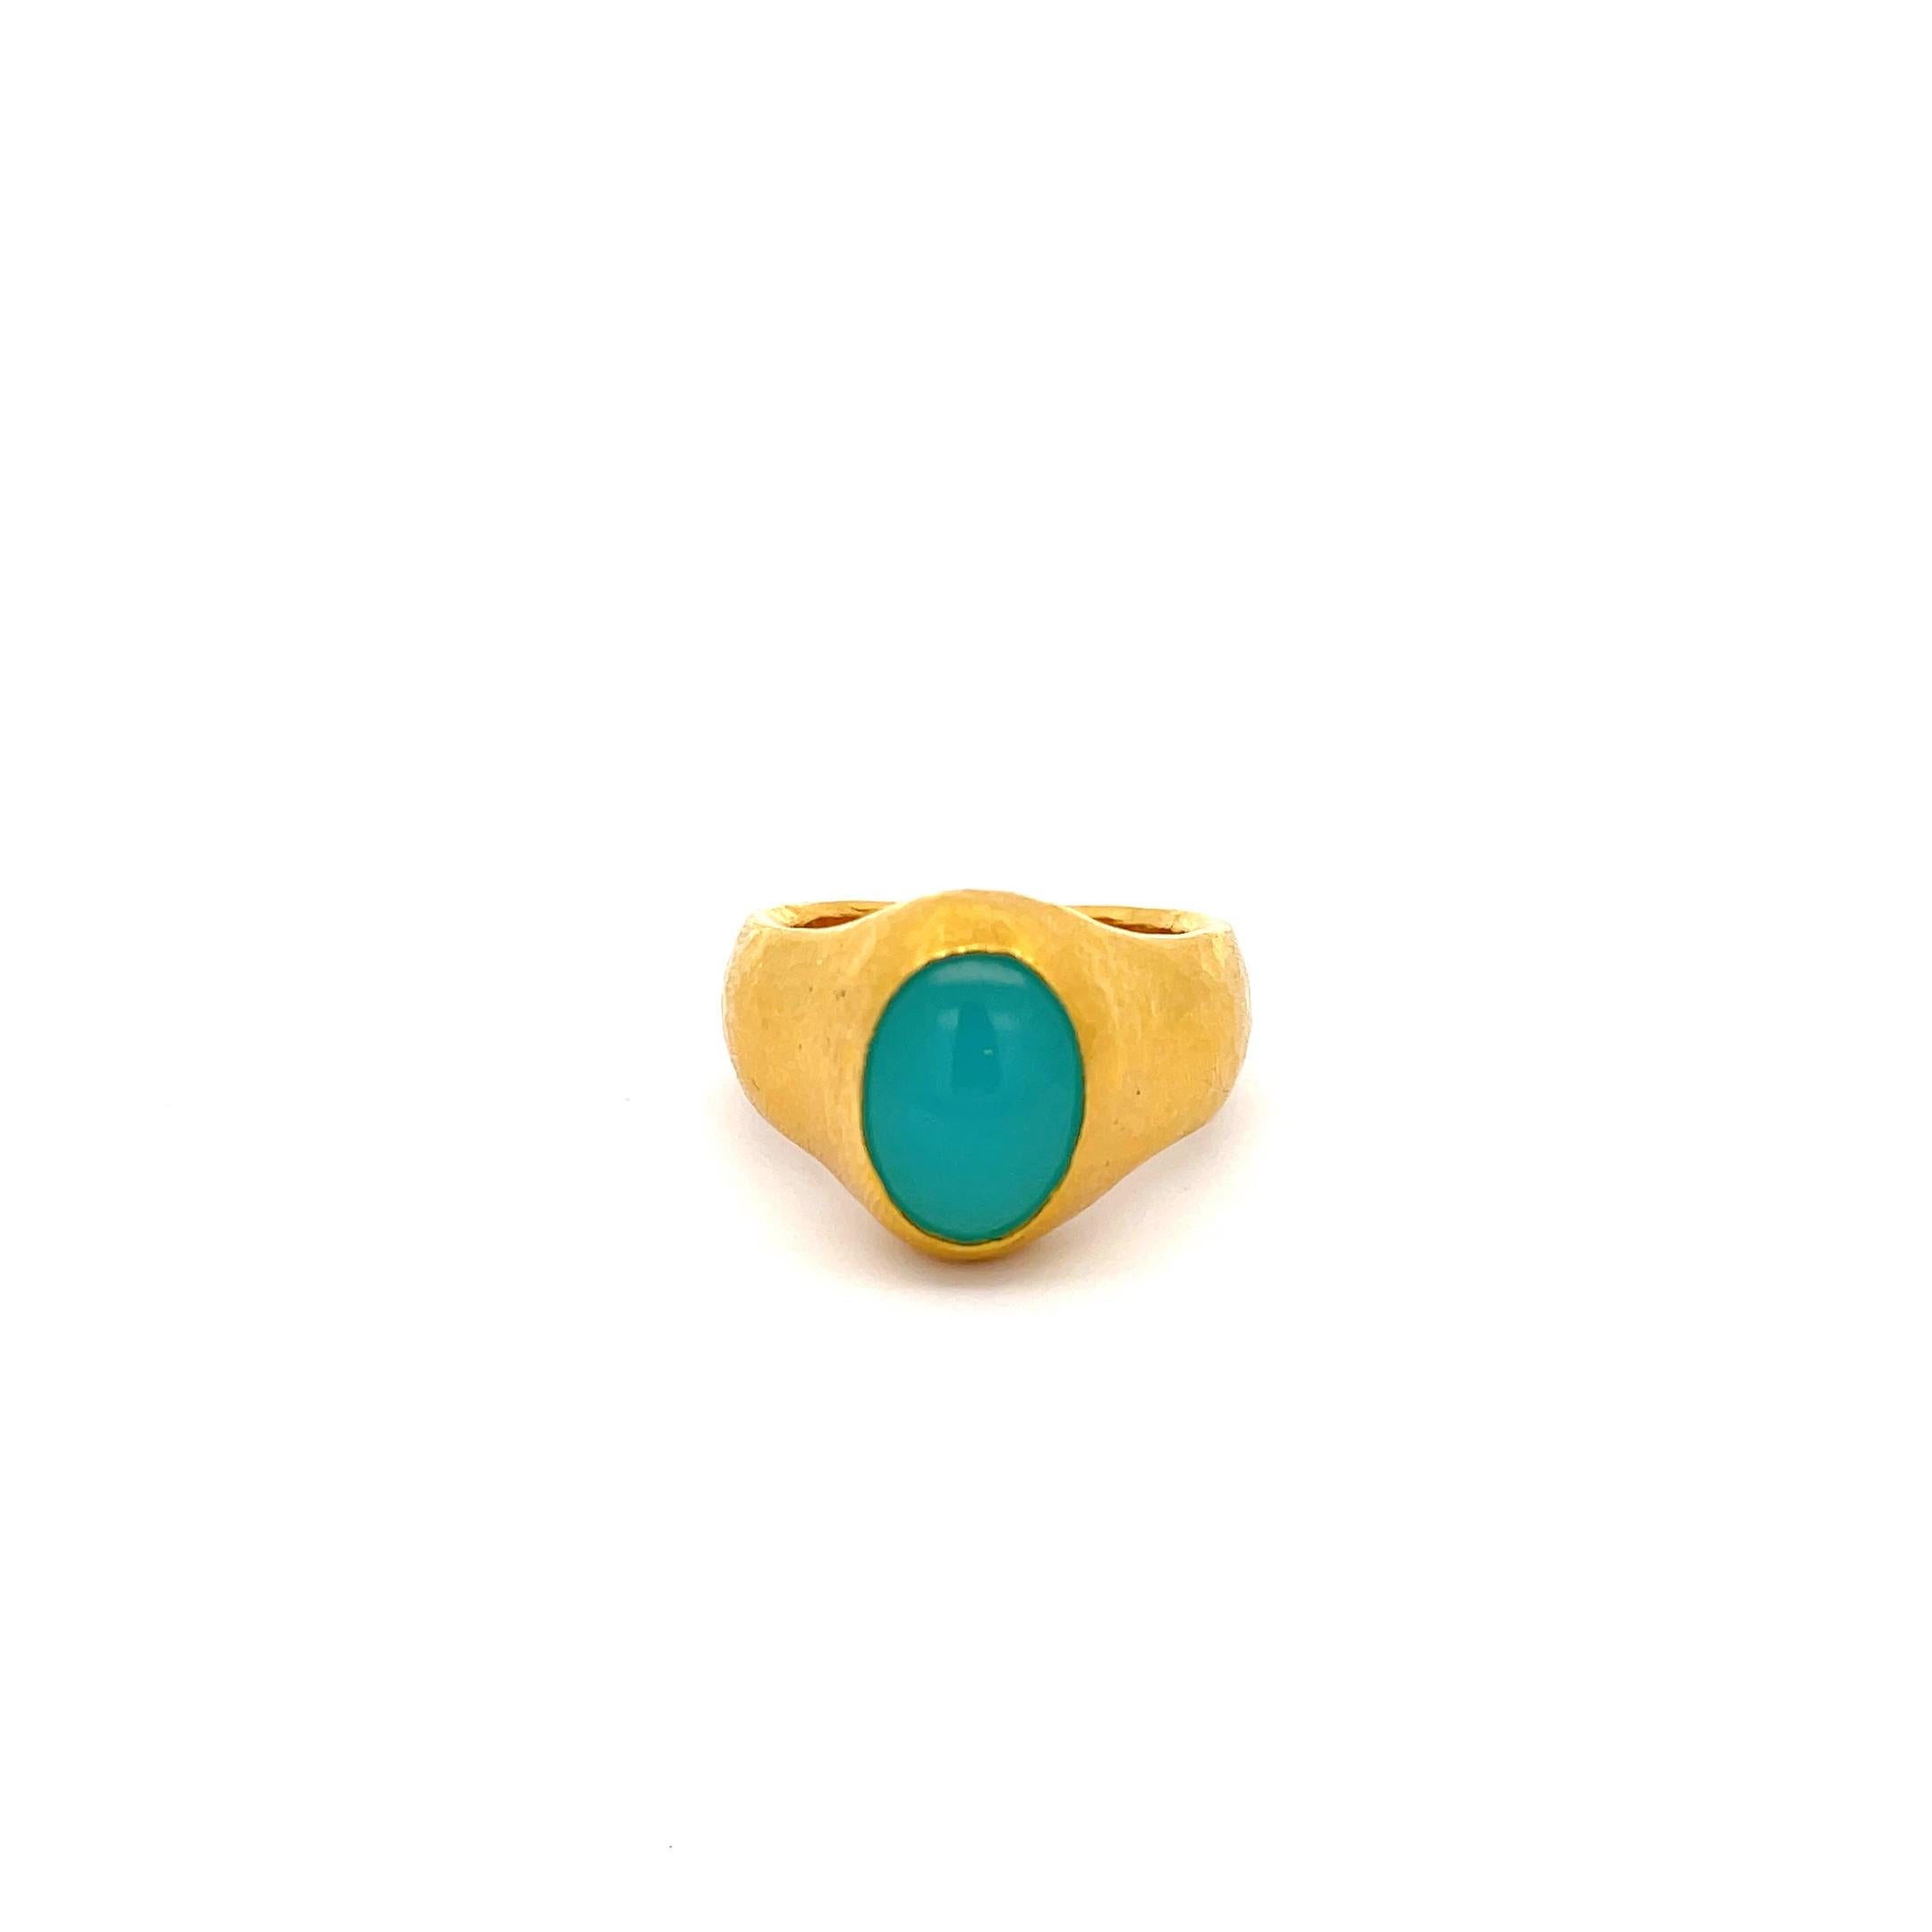 Gurhan Rune Collection'S Opal Ring in 24K Gold. Der Ring ist mit einem Opal-Cabochon versehen, der etwa 13,80 mm x 10,10 mm groß ist. Ring Größe 9,75, wiegt 16,50 Gramm.